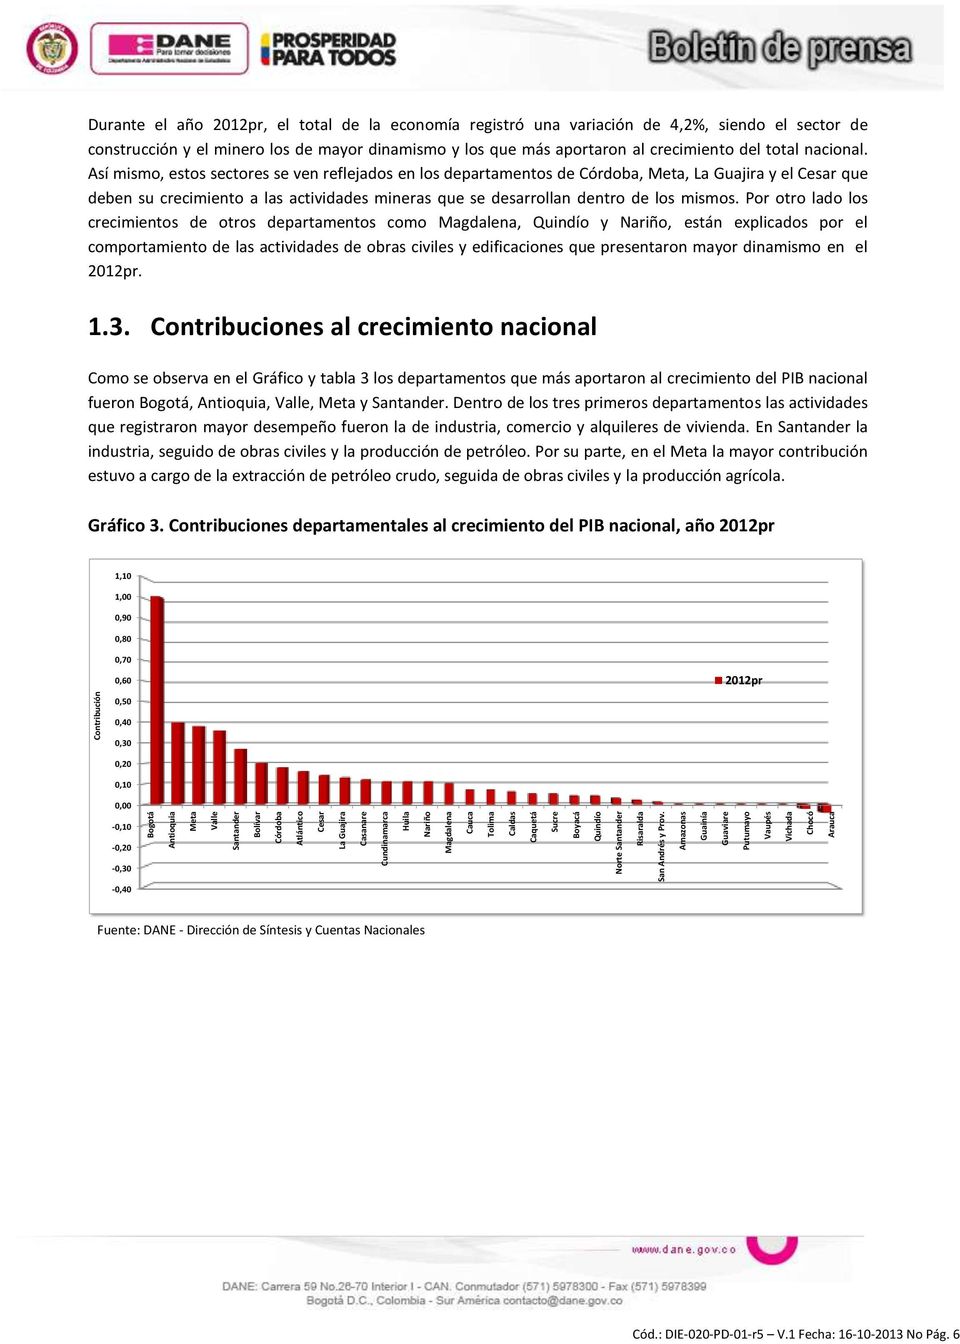 Amazonas Guainía Guaviare Putumayo Vaupés Vichada Chocó Arauca Contribución Durante el año 2012pr, el total de la economía registró una variación de 4,2%, siendo el sector de construcción y el minero